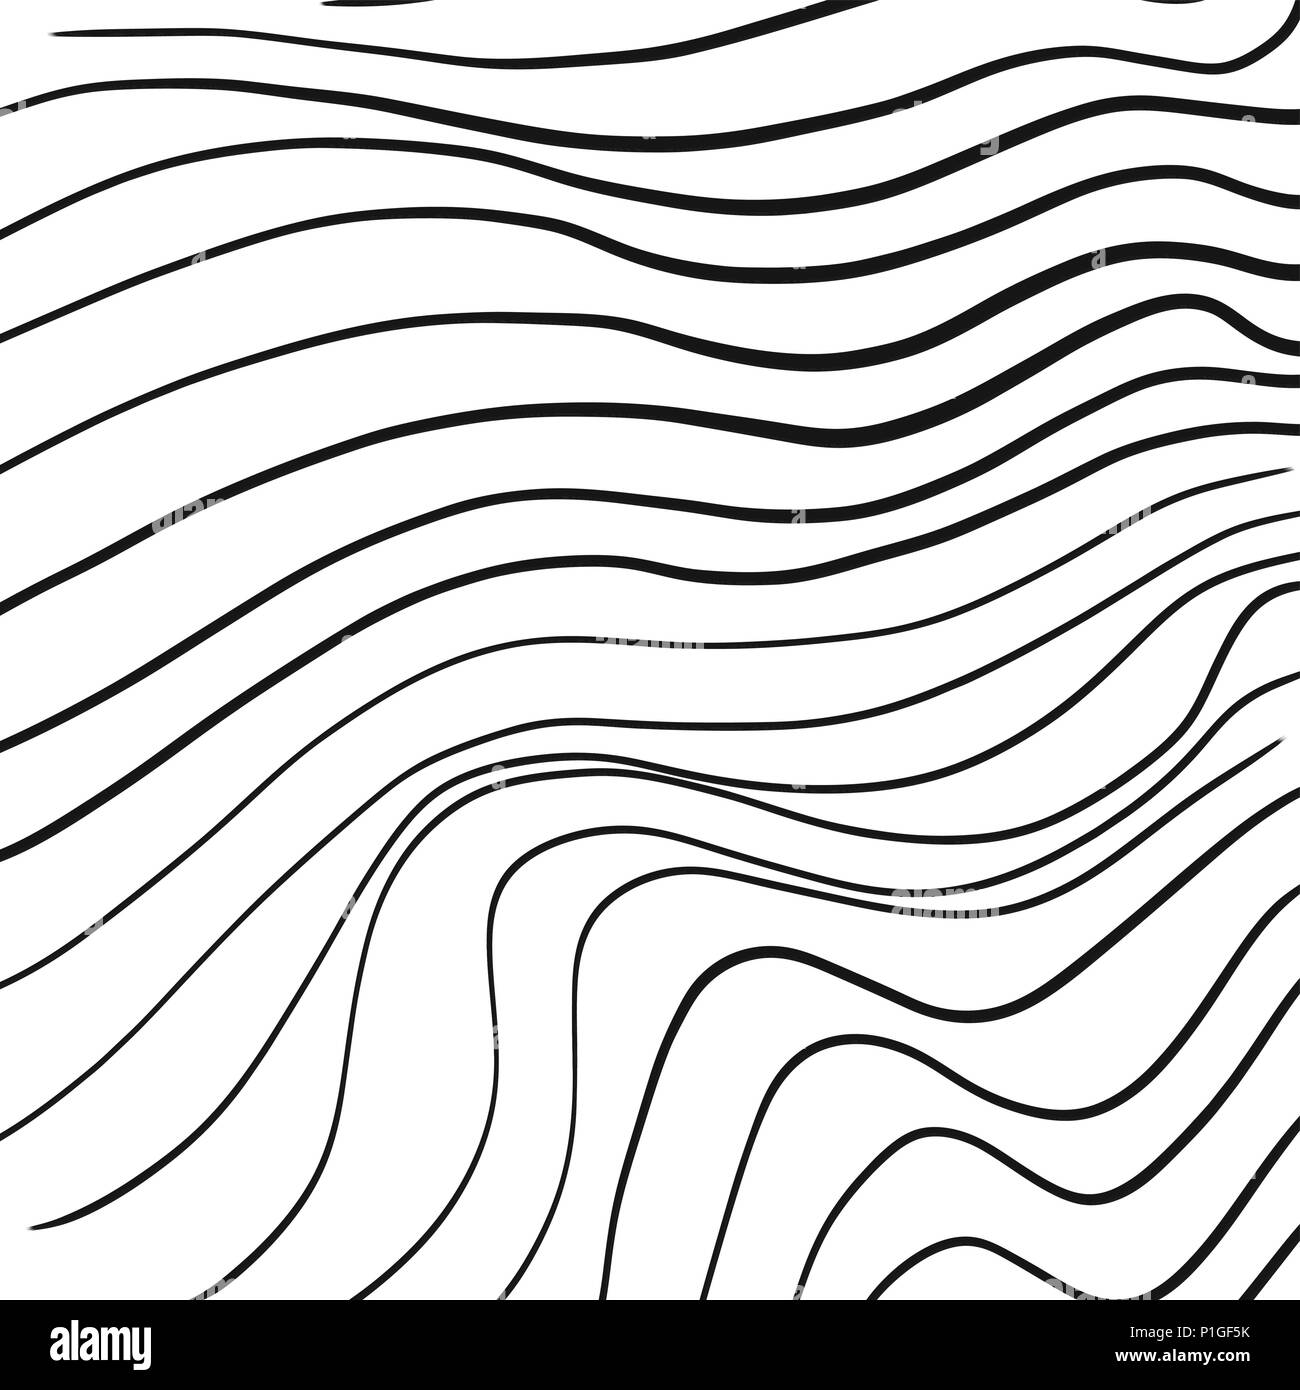 Von Hand gezeichnete Linie kunst wellenförmige Muster, Vector Illustration Stock Vektor